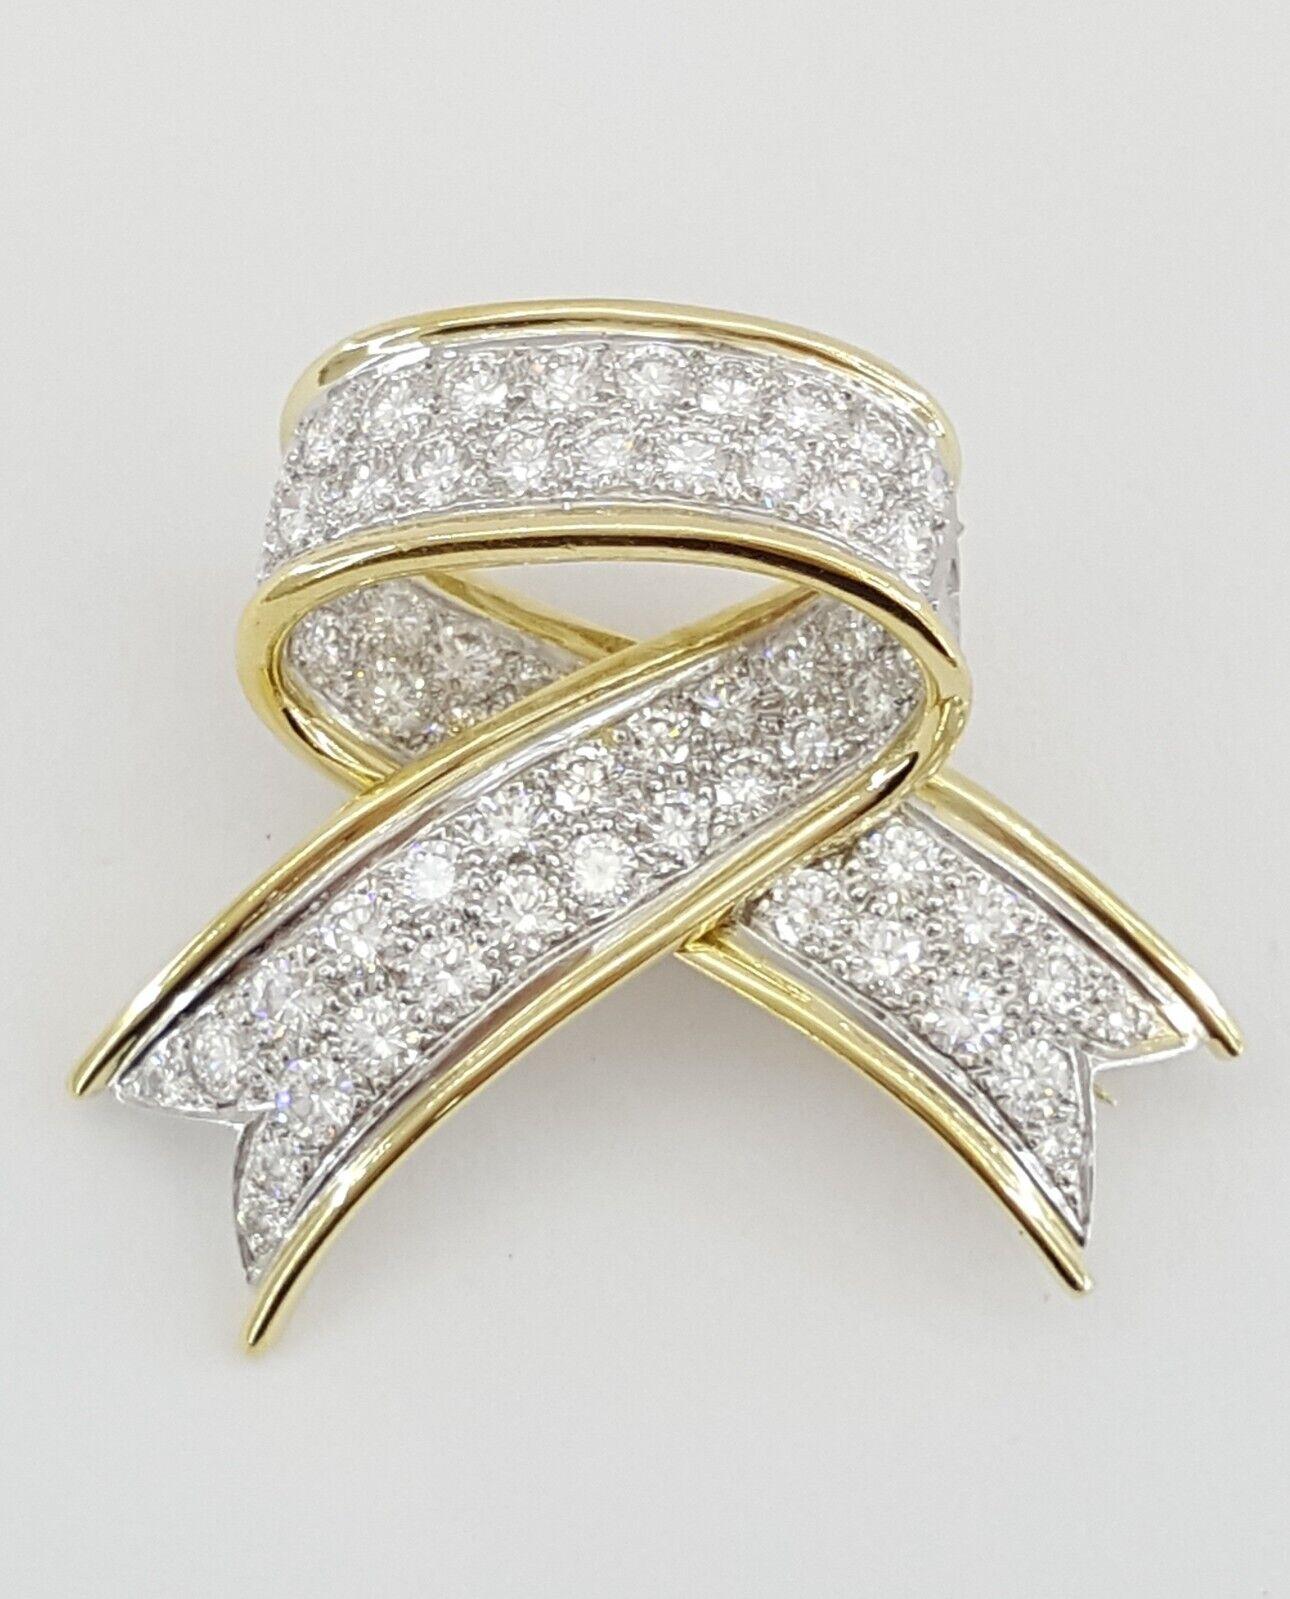 Tiffany & Co. Platin & 18K Gelbgold 2,88 ct Round Cut Diamond Bow Ribbon Brosche / Pin-Anhänger. 



Die Brosche wiegt 10,4 Gramm, 35,2mm (1,39